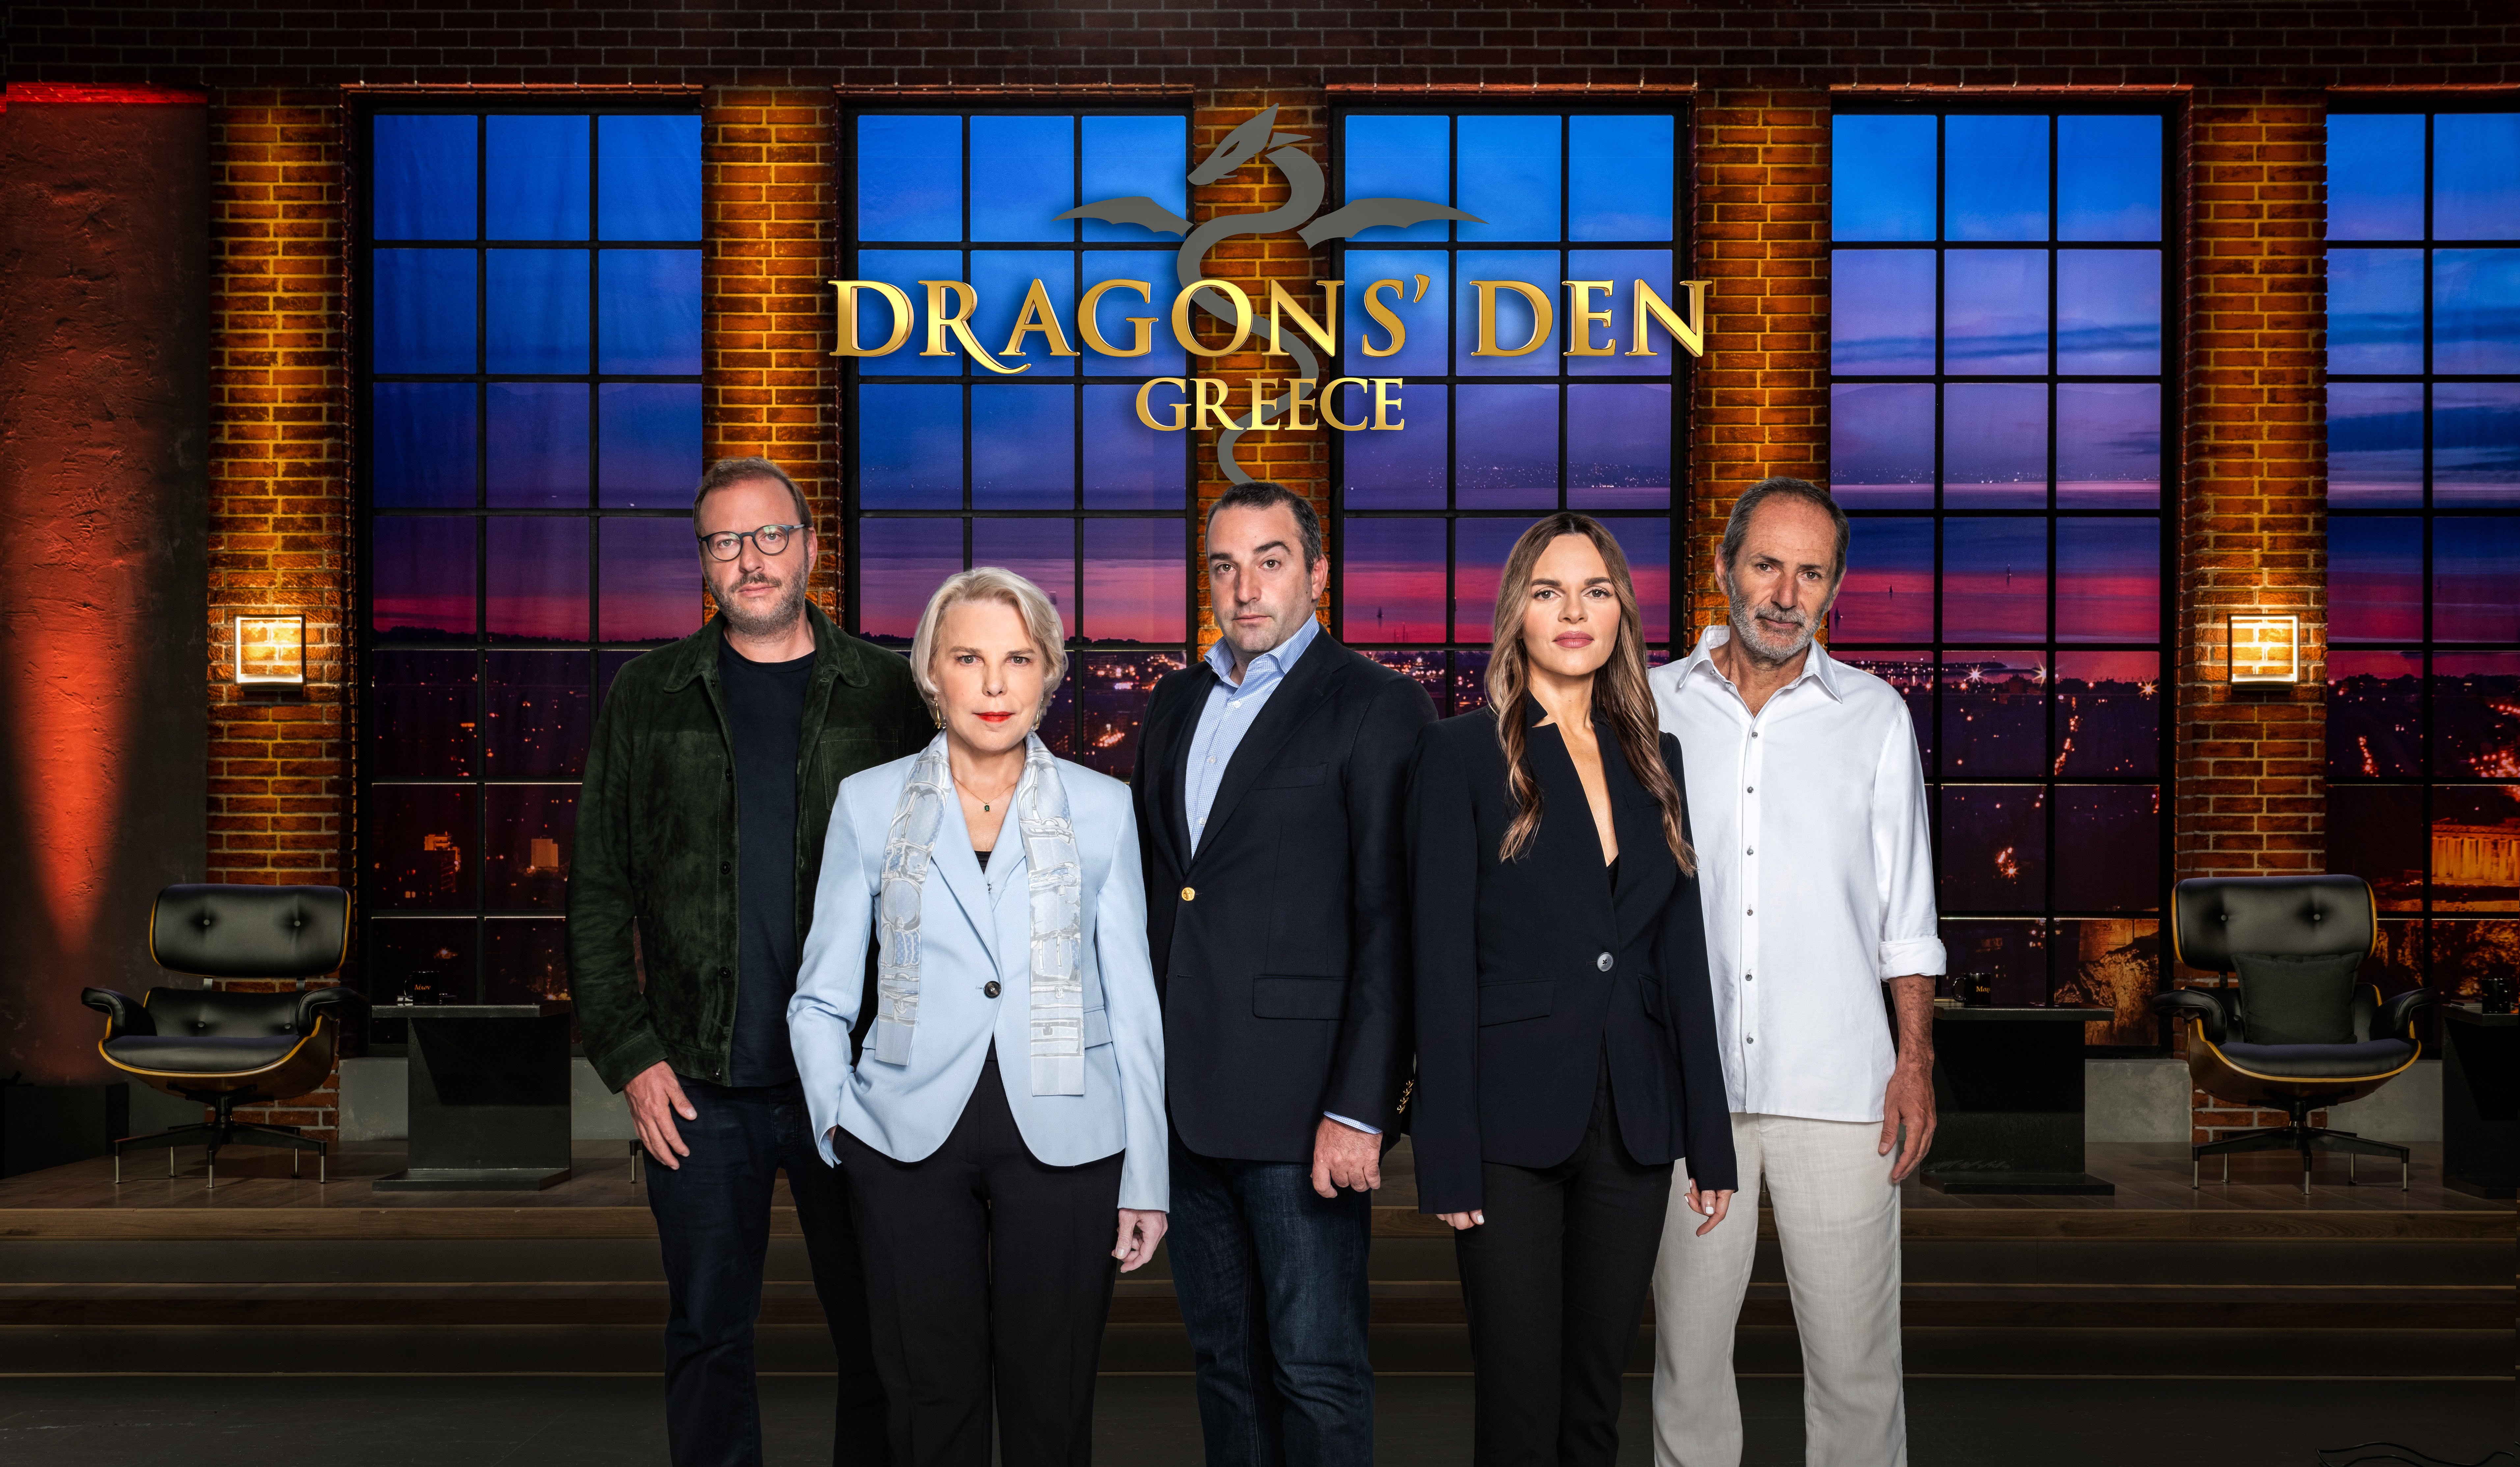 Dragons’ Den: Το πιο επιτυχημένο τηλεοπτικό show επενδύσεων και επιχειρηματικότητας, έρχεται στον ΑΝΤ1 την Πέμπτη 26 Ιανουαρίου